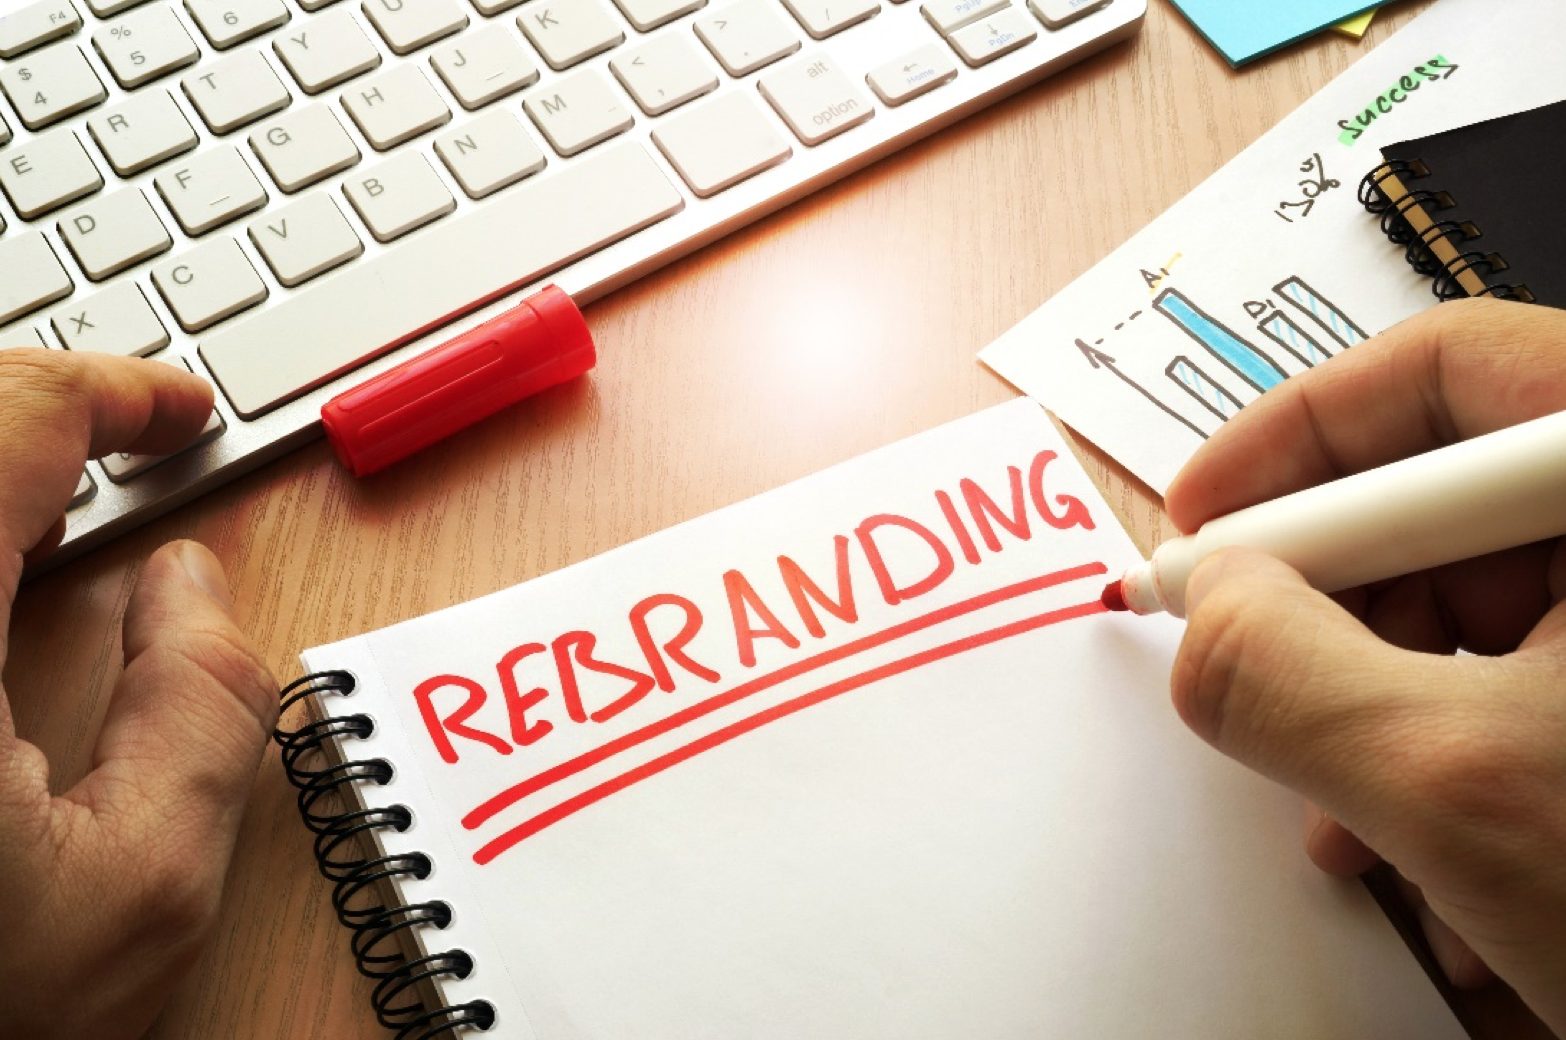 The term, ‘Rebranding’ written on a notebook